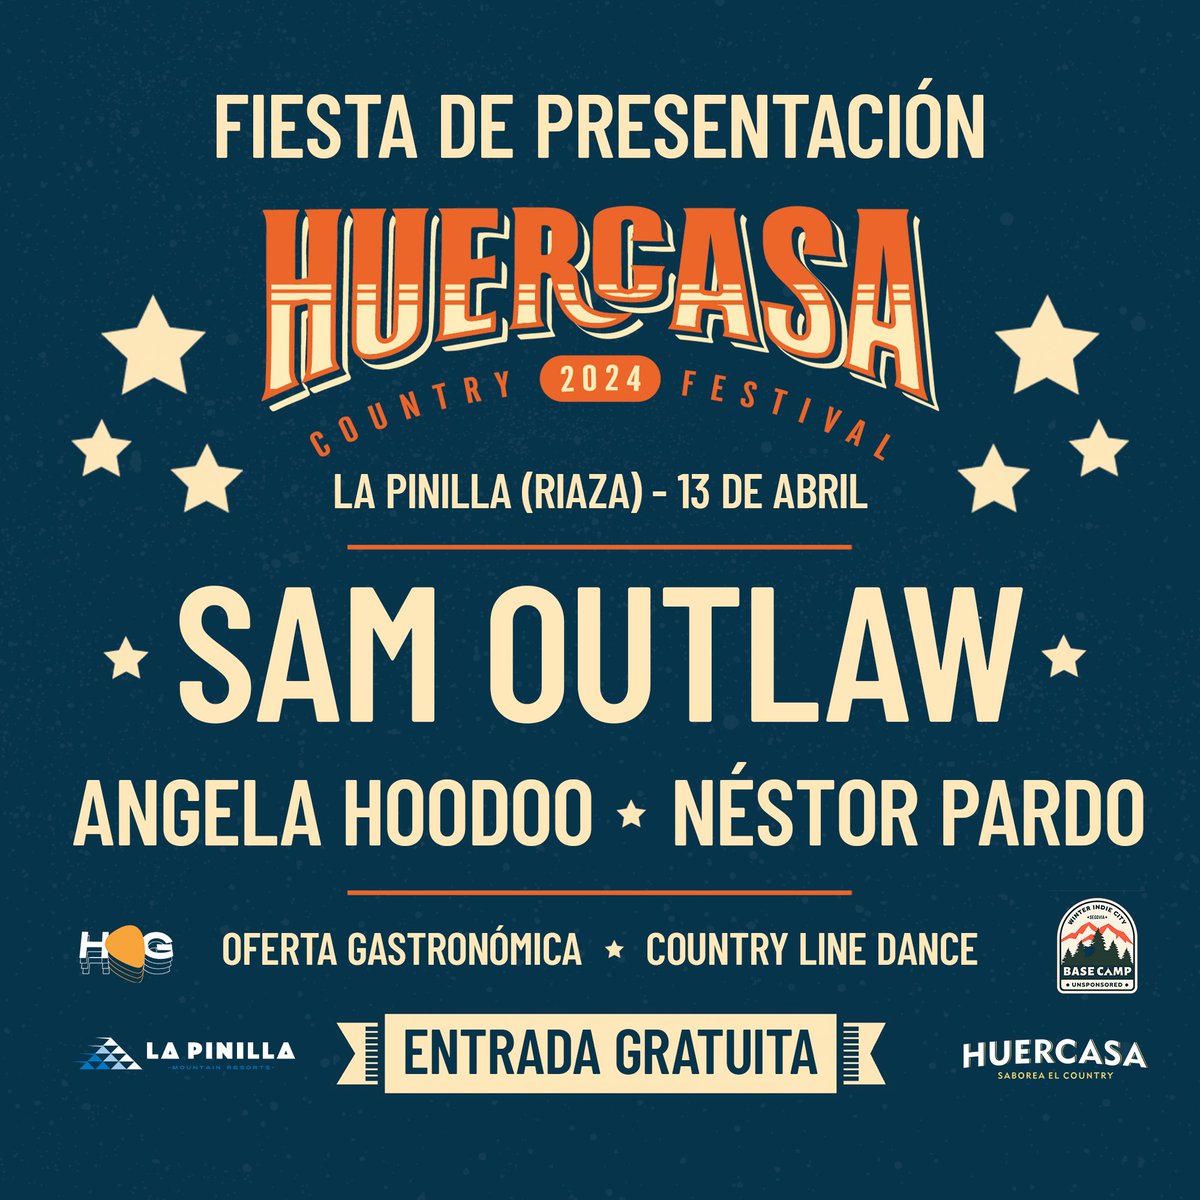 💥 ¡Fiesta de presentación del HCF2024! 🏔️ SÁBADO 13 DE ABRIL, 14:00, estación de LA PINILLA (Riaza), con las actuaciones en directo de SAM OUTLAW, ANGELA HOODOO y NÉSTOR PARDO. ENTRADA GRATUITA 🎟️ Abonos festival 70€ (+ gg) @wegowES 💛 #TakeMeHomeCountryRoads #HCF2024